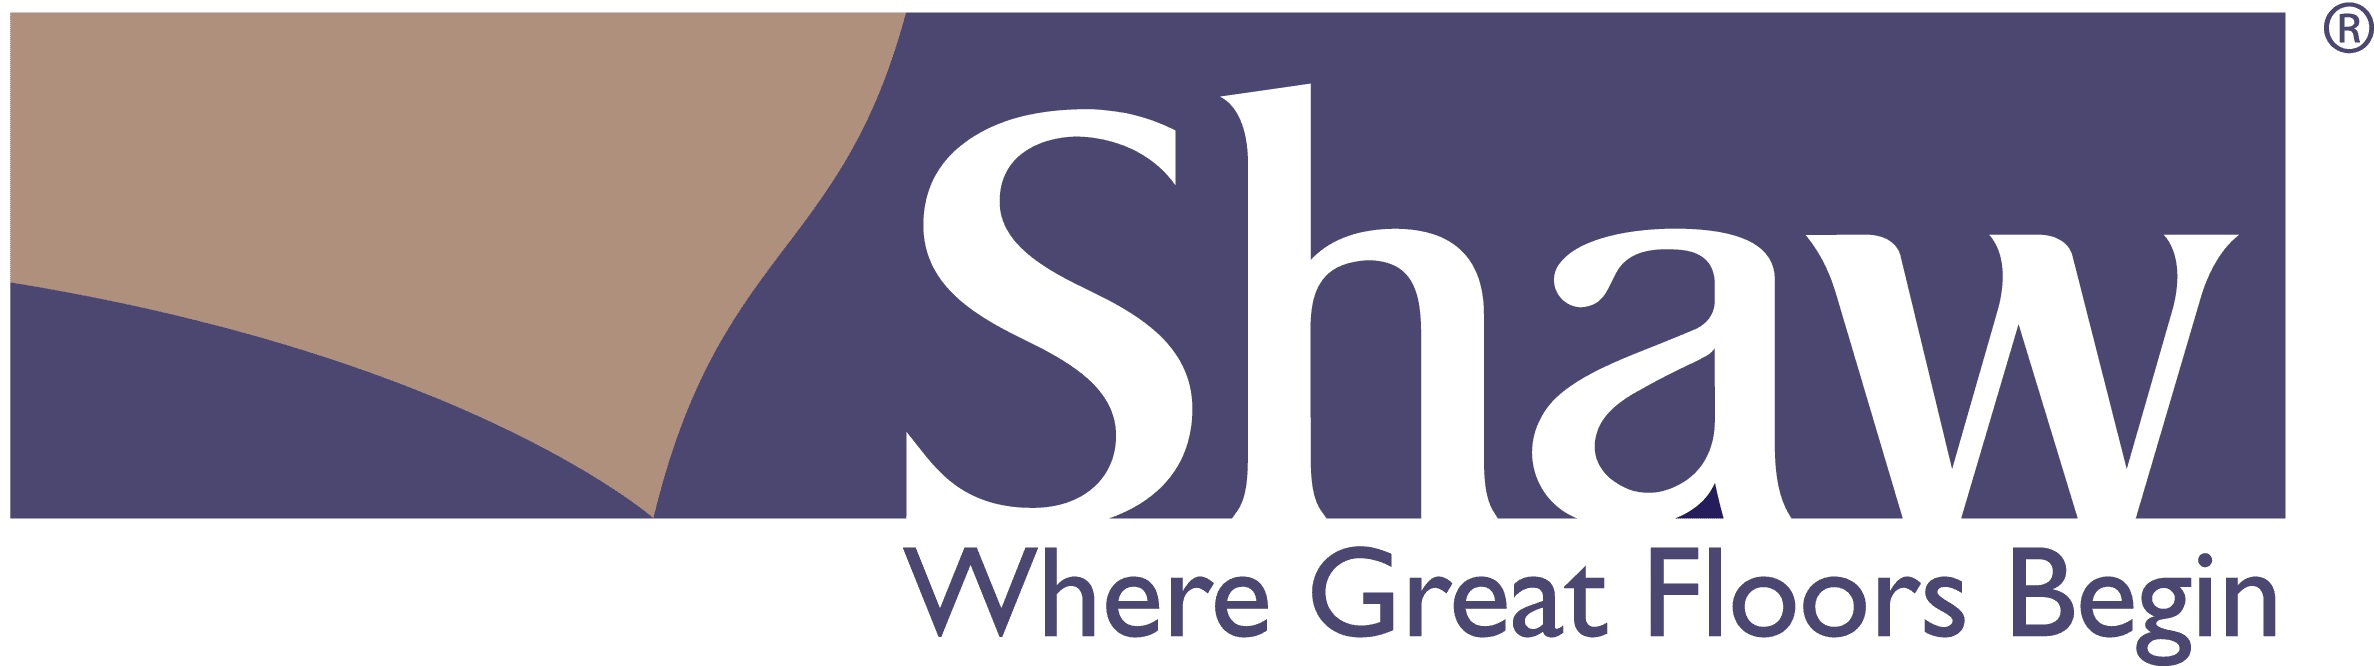 Shaw vendor logo